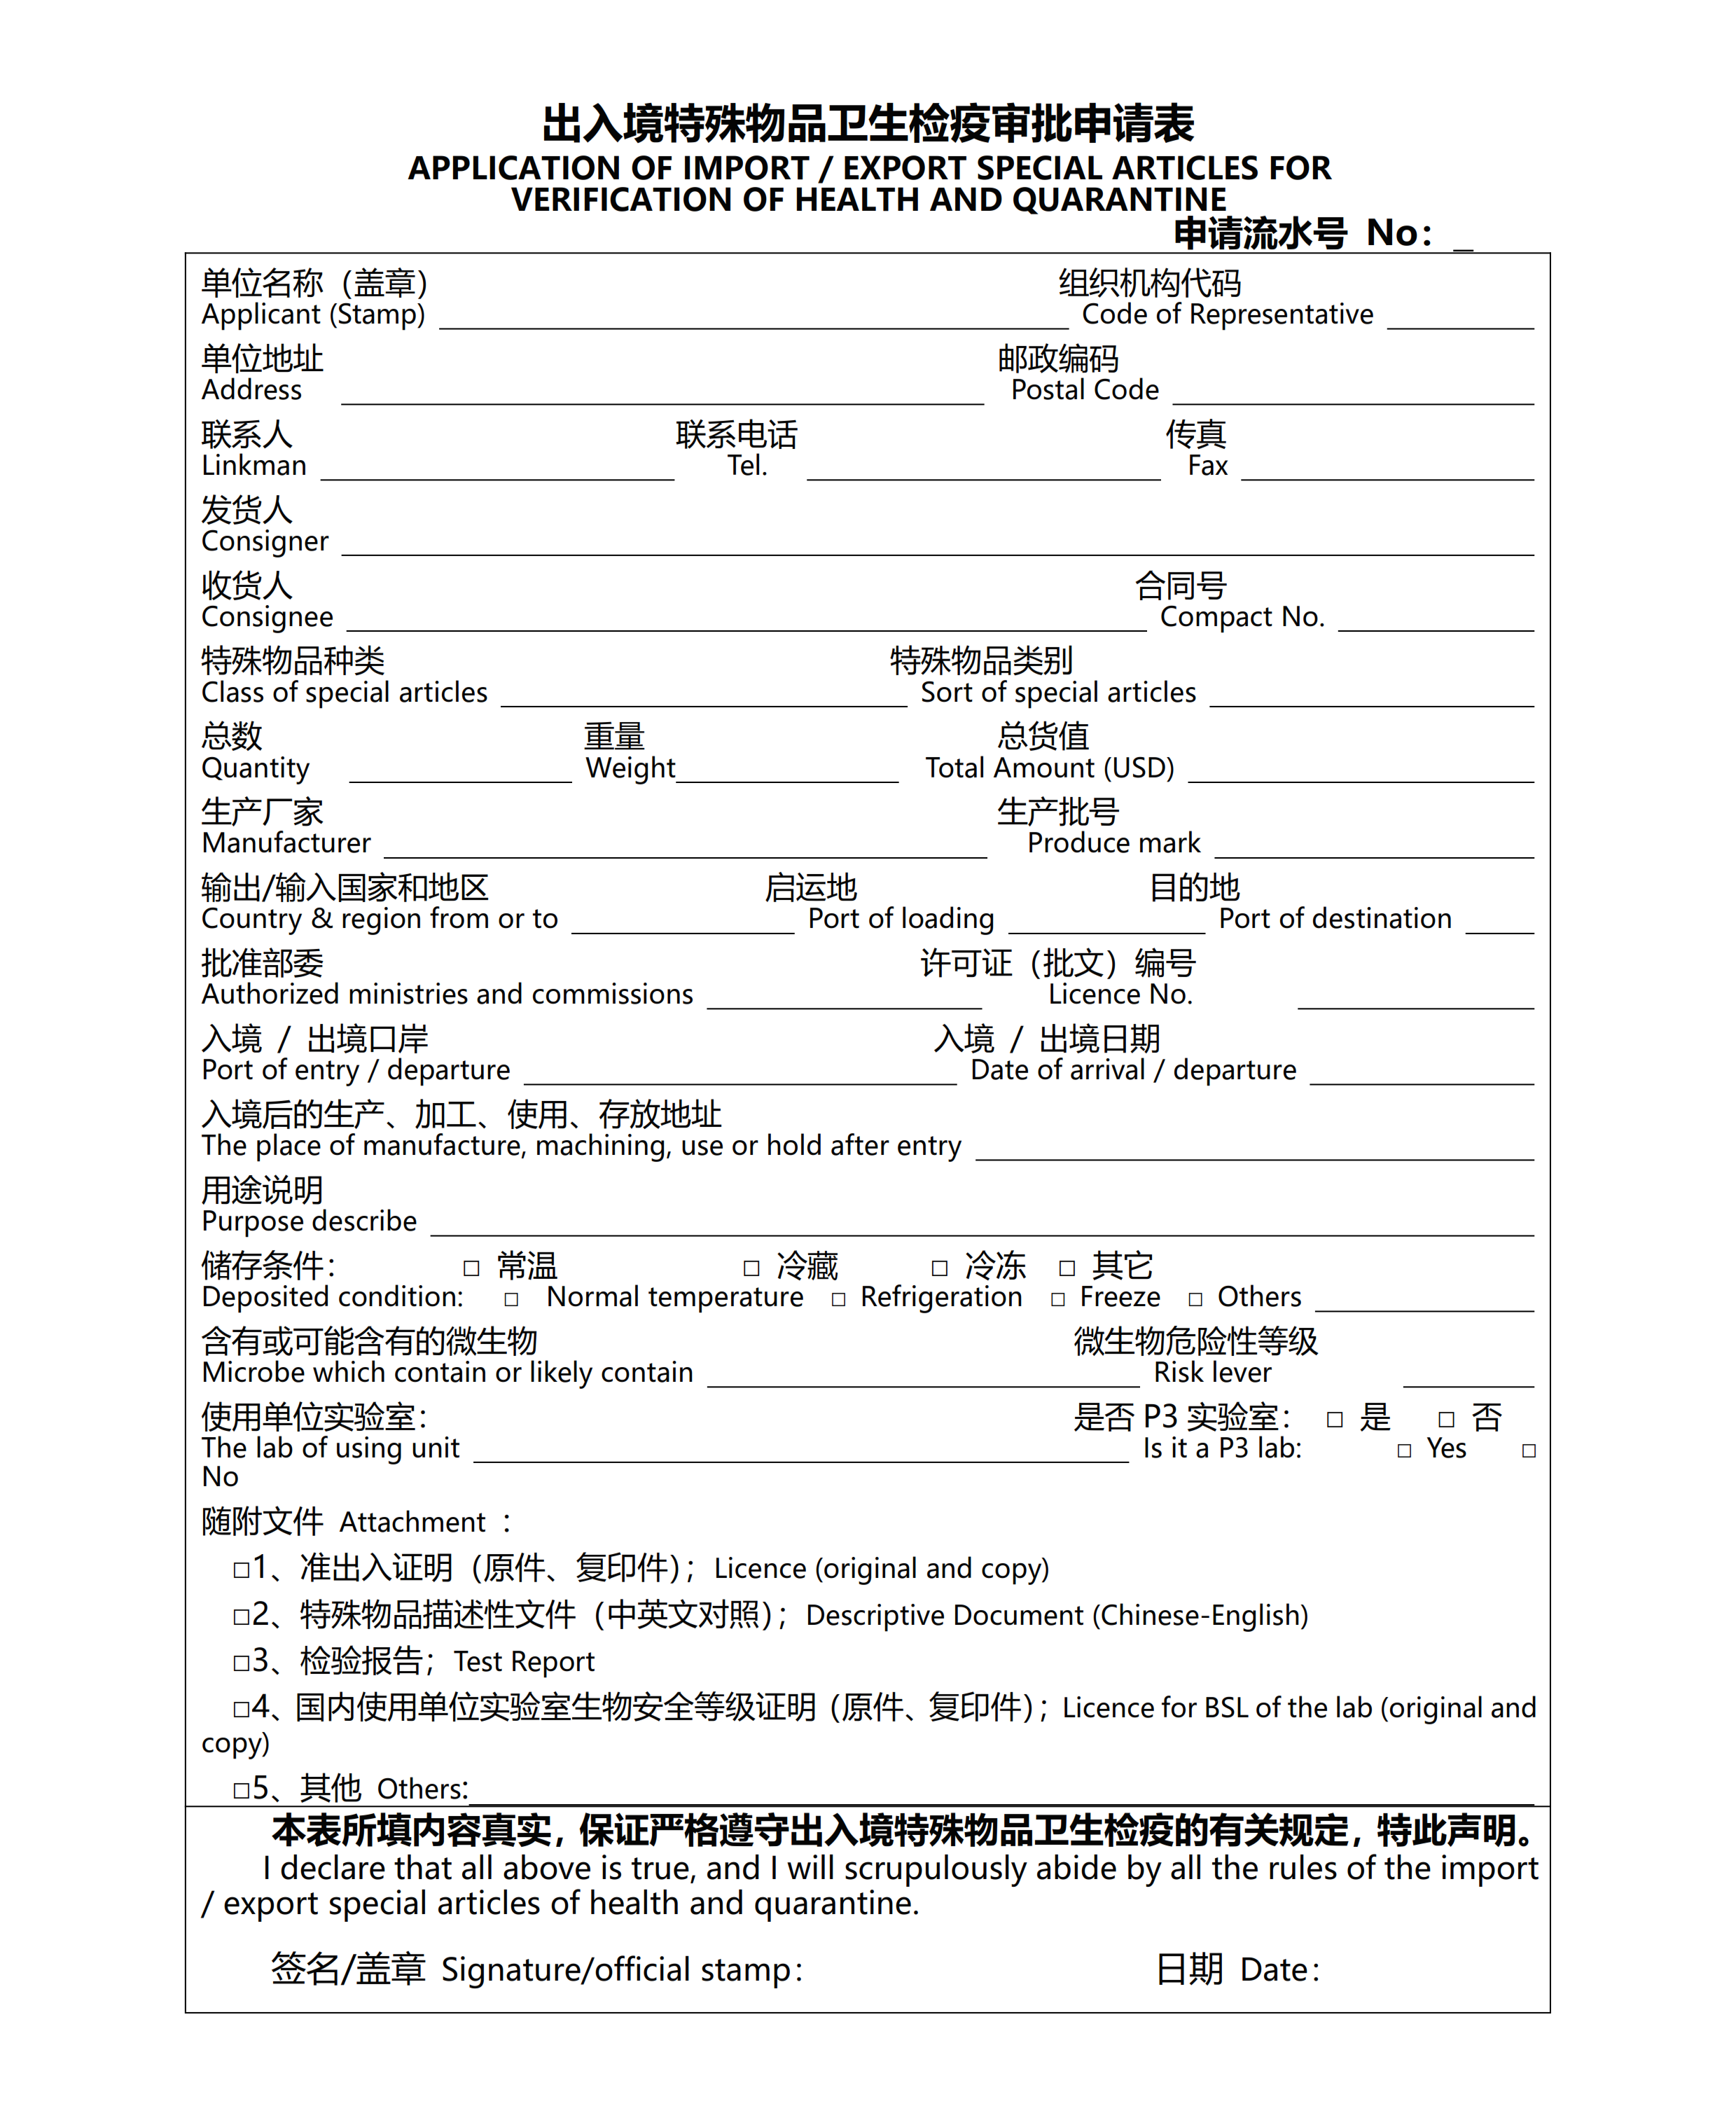 出入境特殊物品卫生检疫审批申请表_001.png